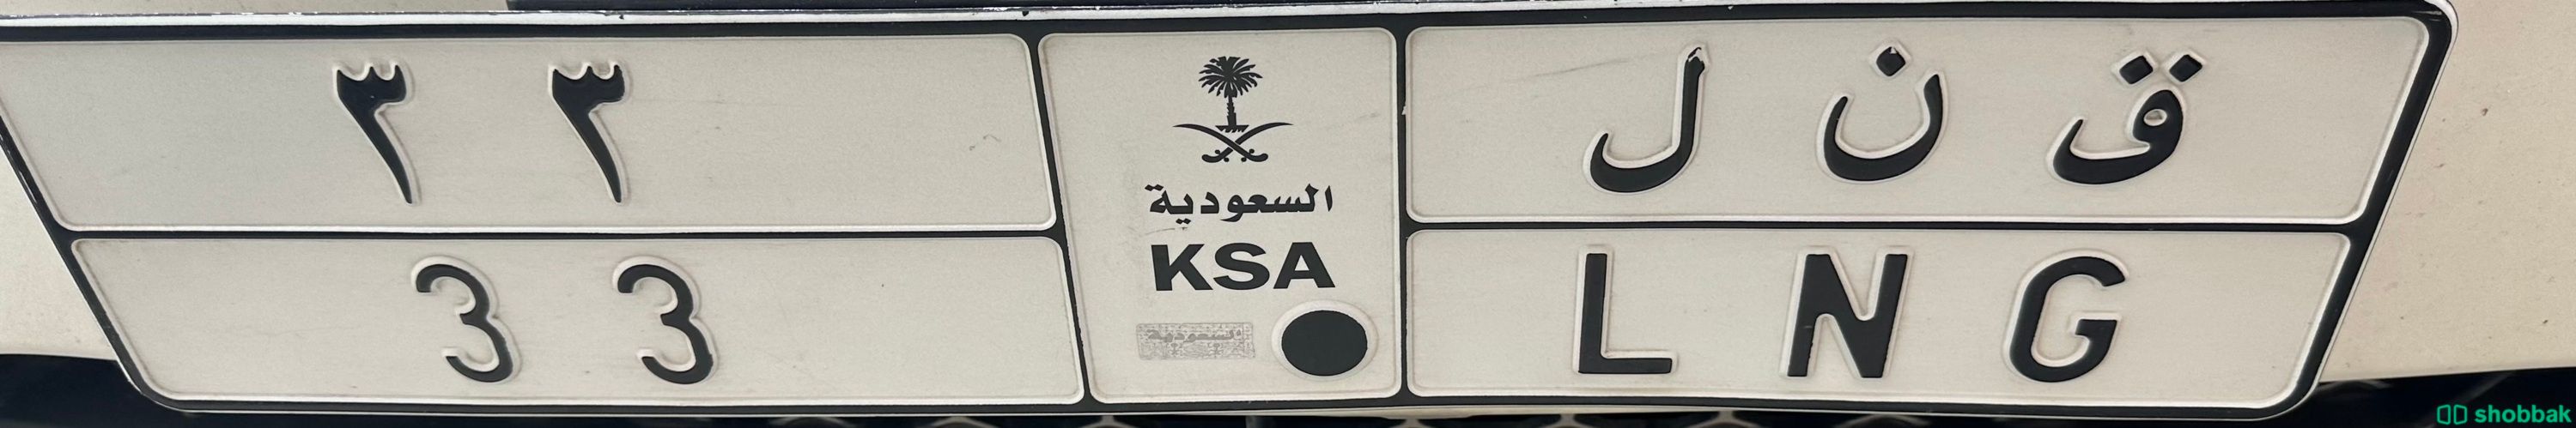 لوحه مميزه ثنائي وحروف مرسومه  شباك السعودية